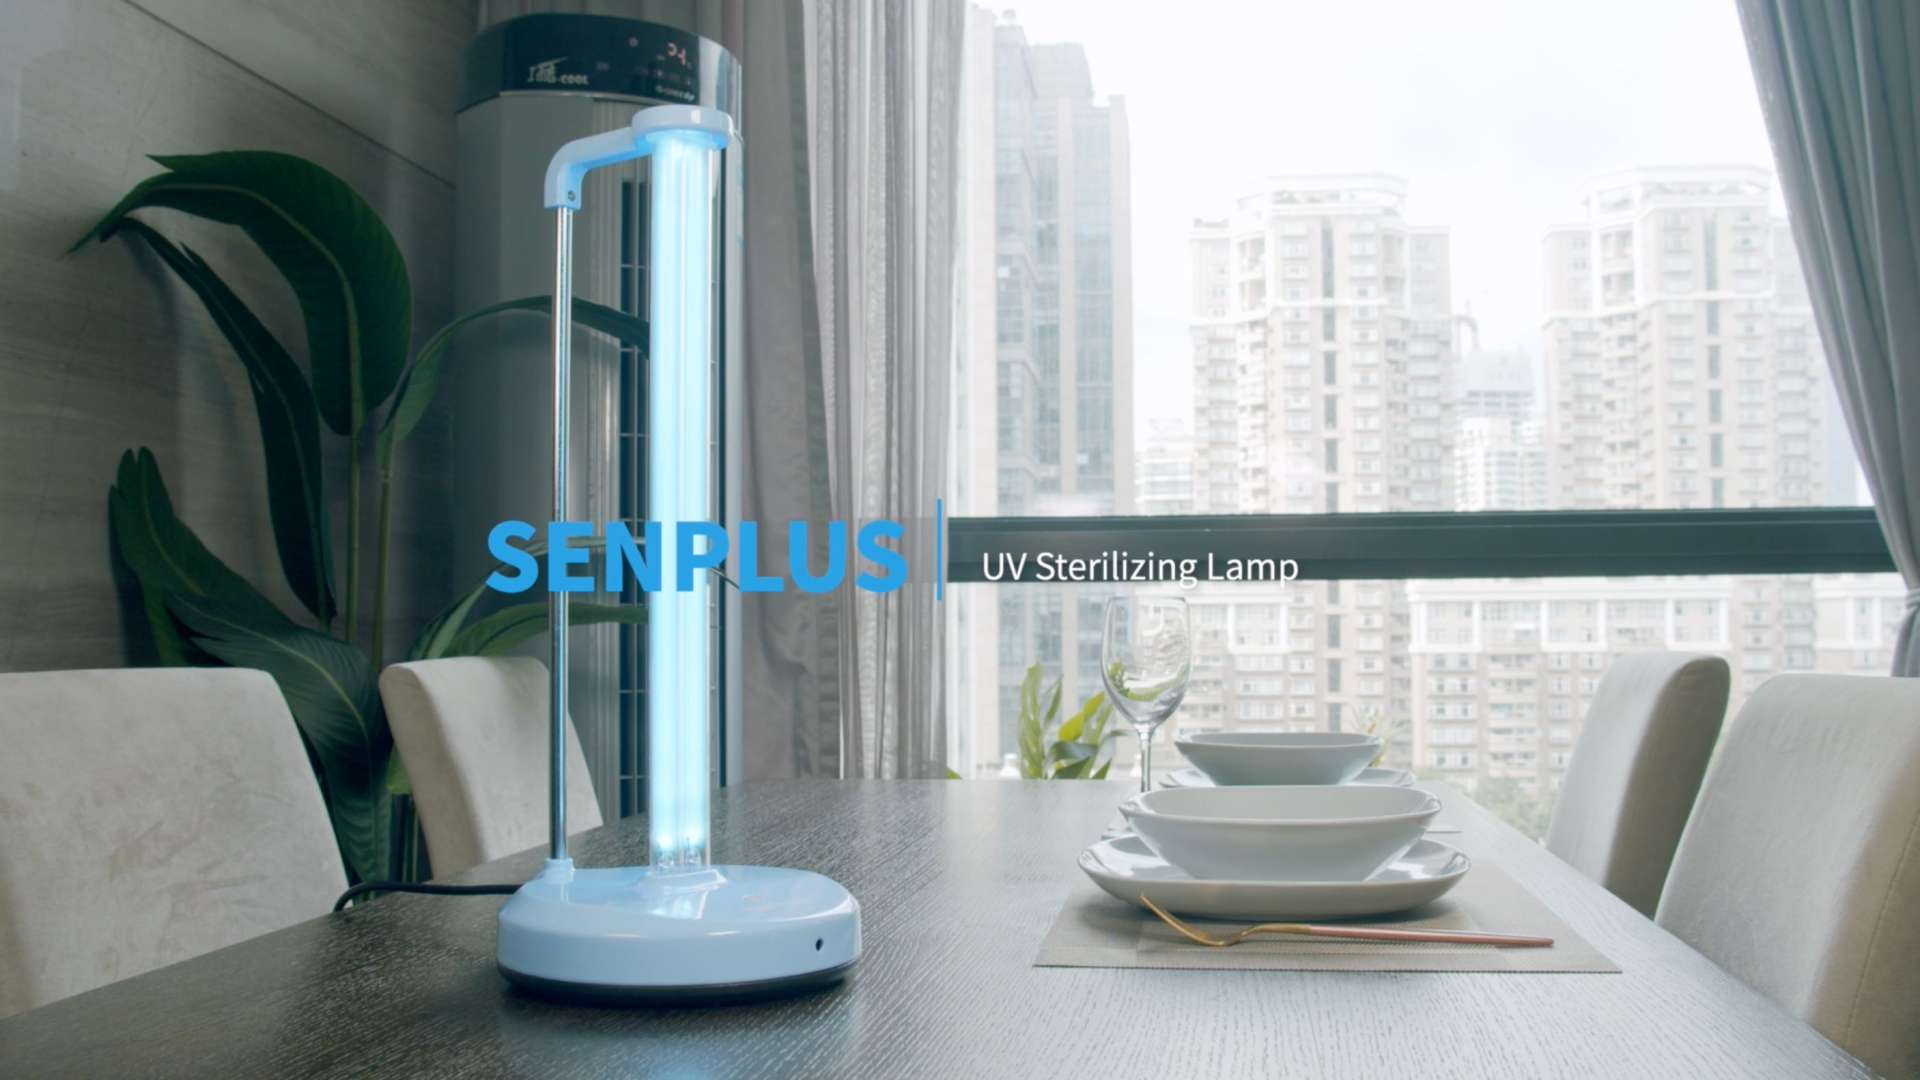 Senplus紫外线消毒灯